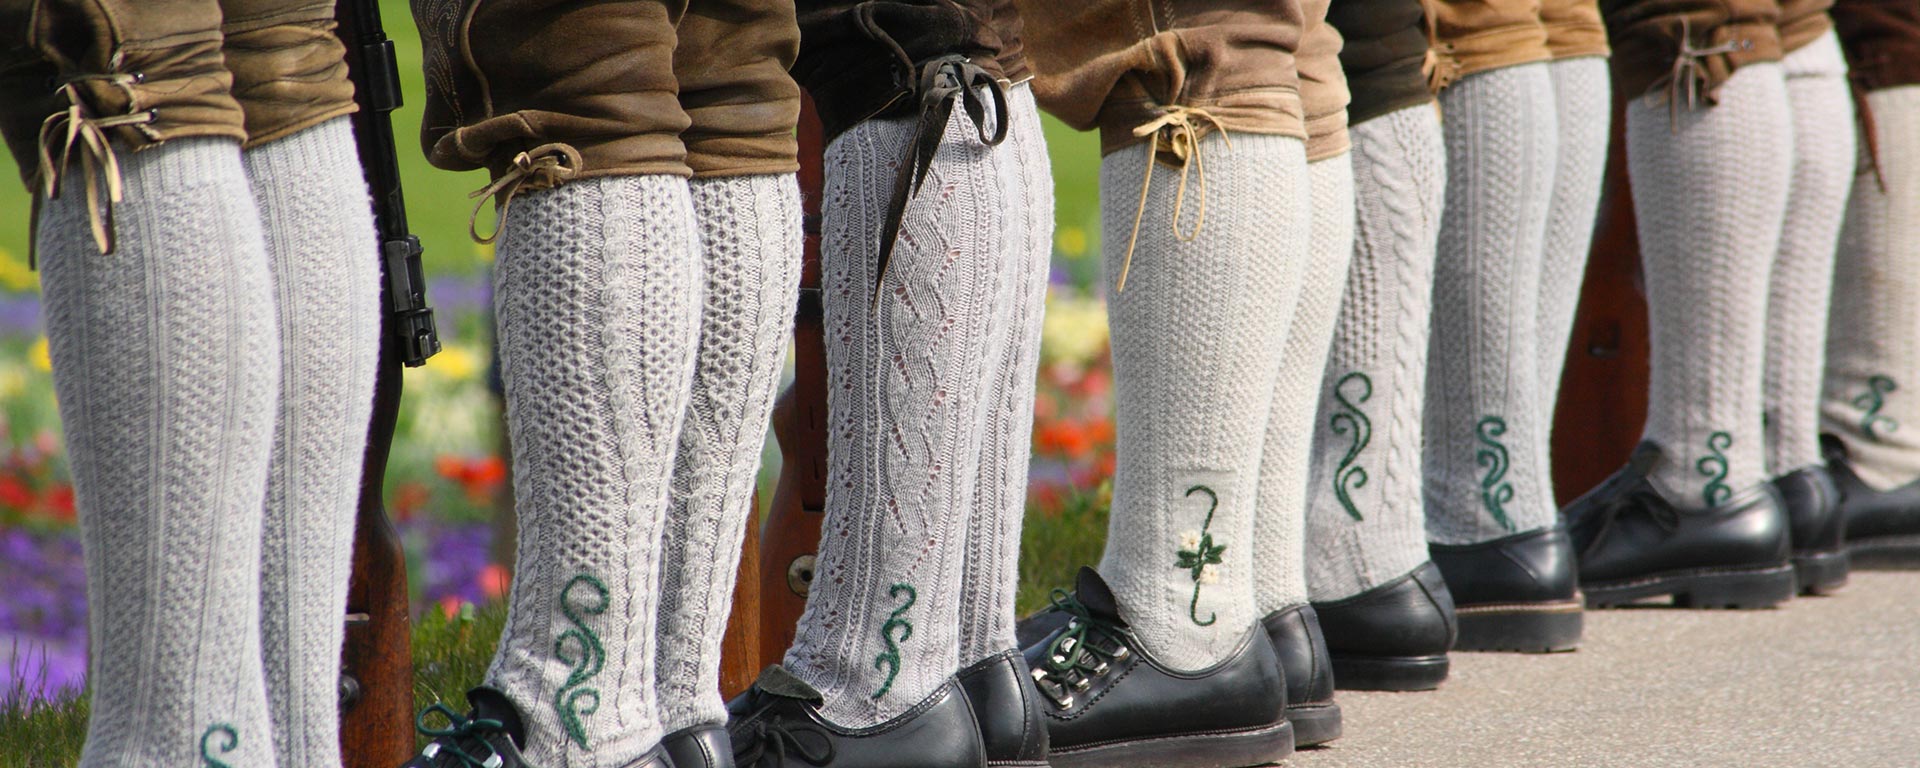 Dettaglio su alcuni uomini con Lederhosen, i tradizionali pantaloni di cuoio sudtirolesi, e calzettoni di lana bianchi con ricamo di colore verde durante una festa folcloristica a San Vigilio di Marebbe